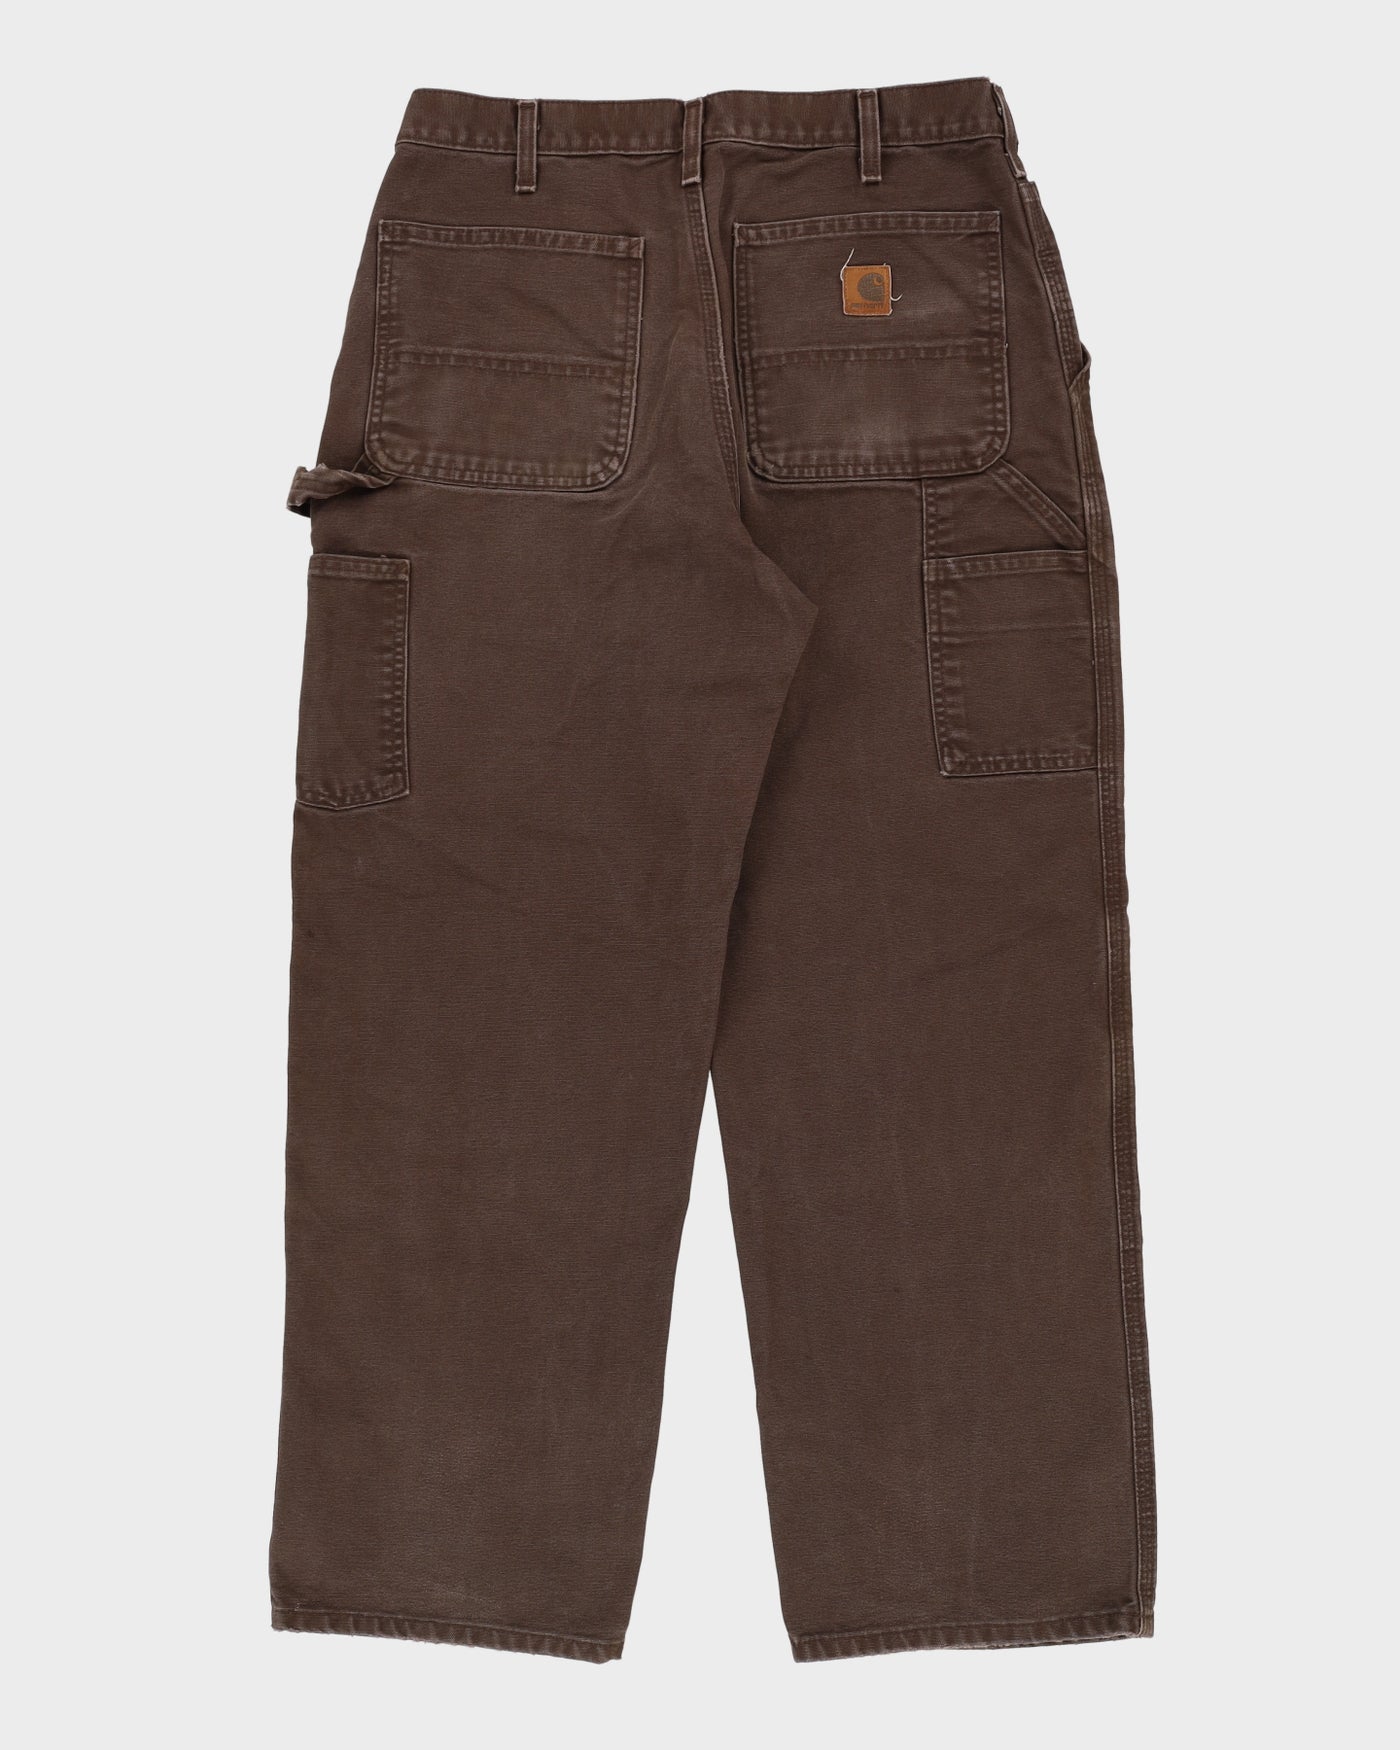 Carhartt Brown Workwear Jeans - W32 L29